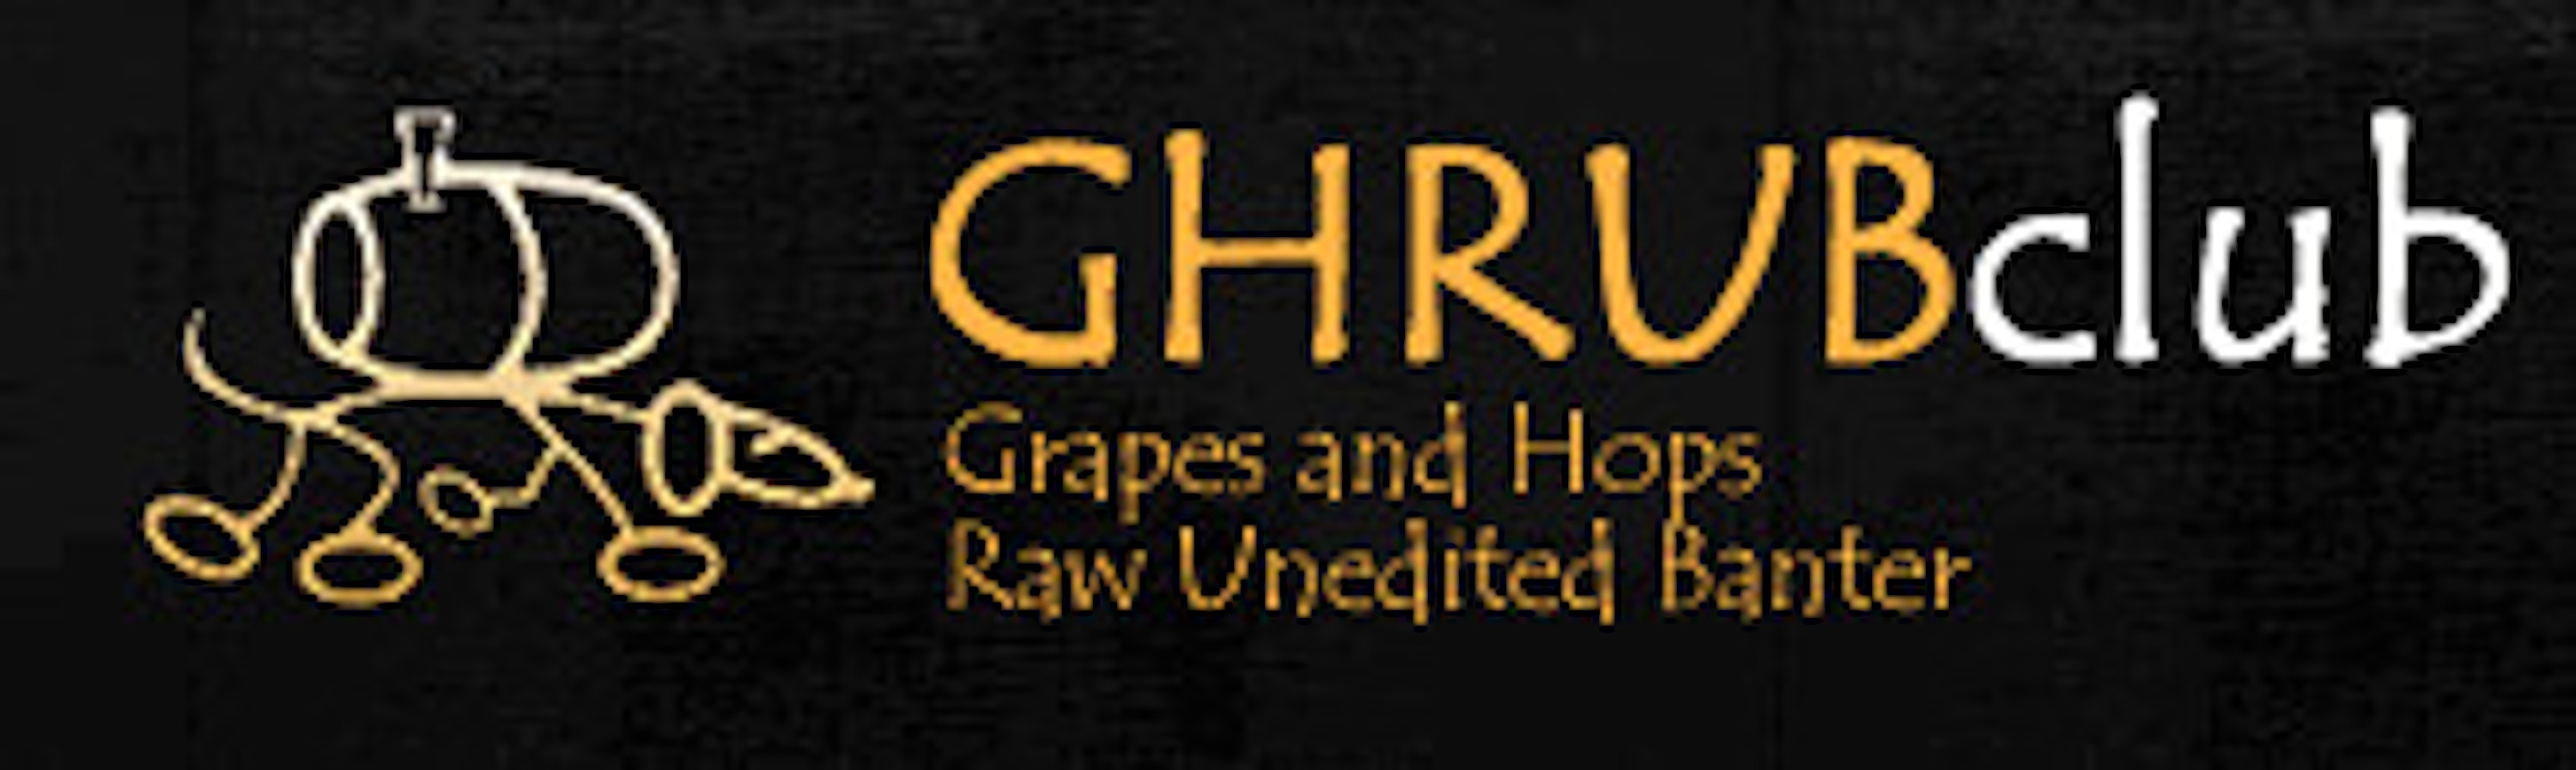 GHRUB Podcast cover logo